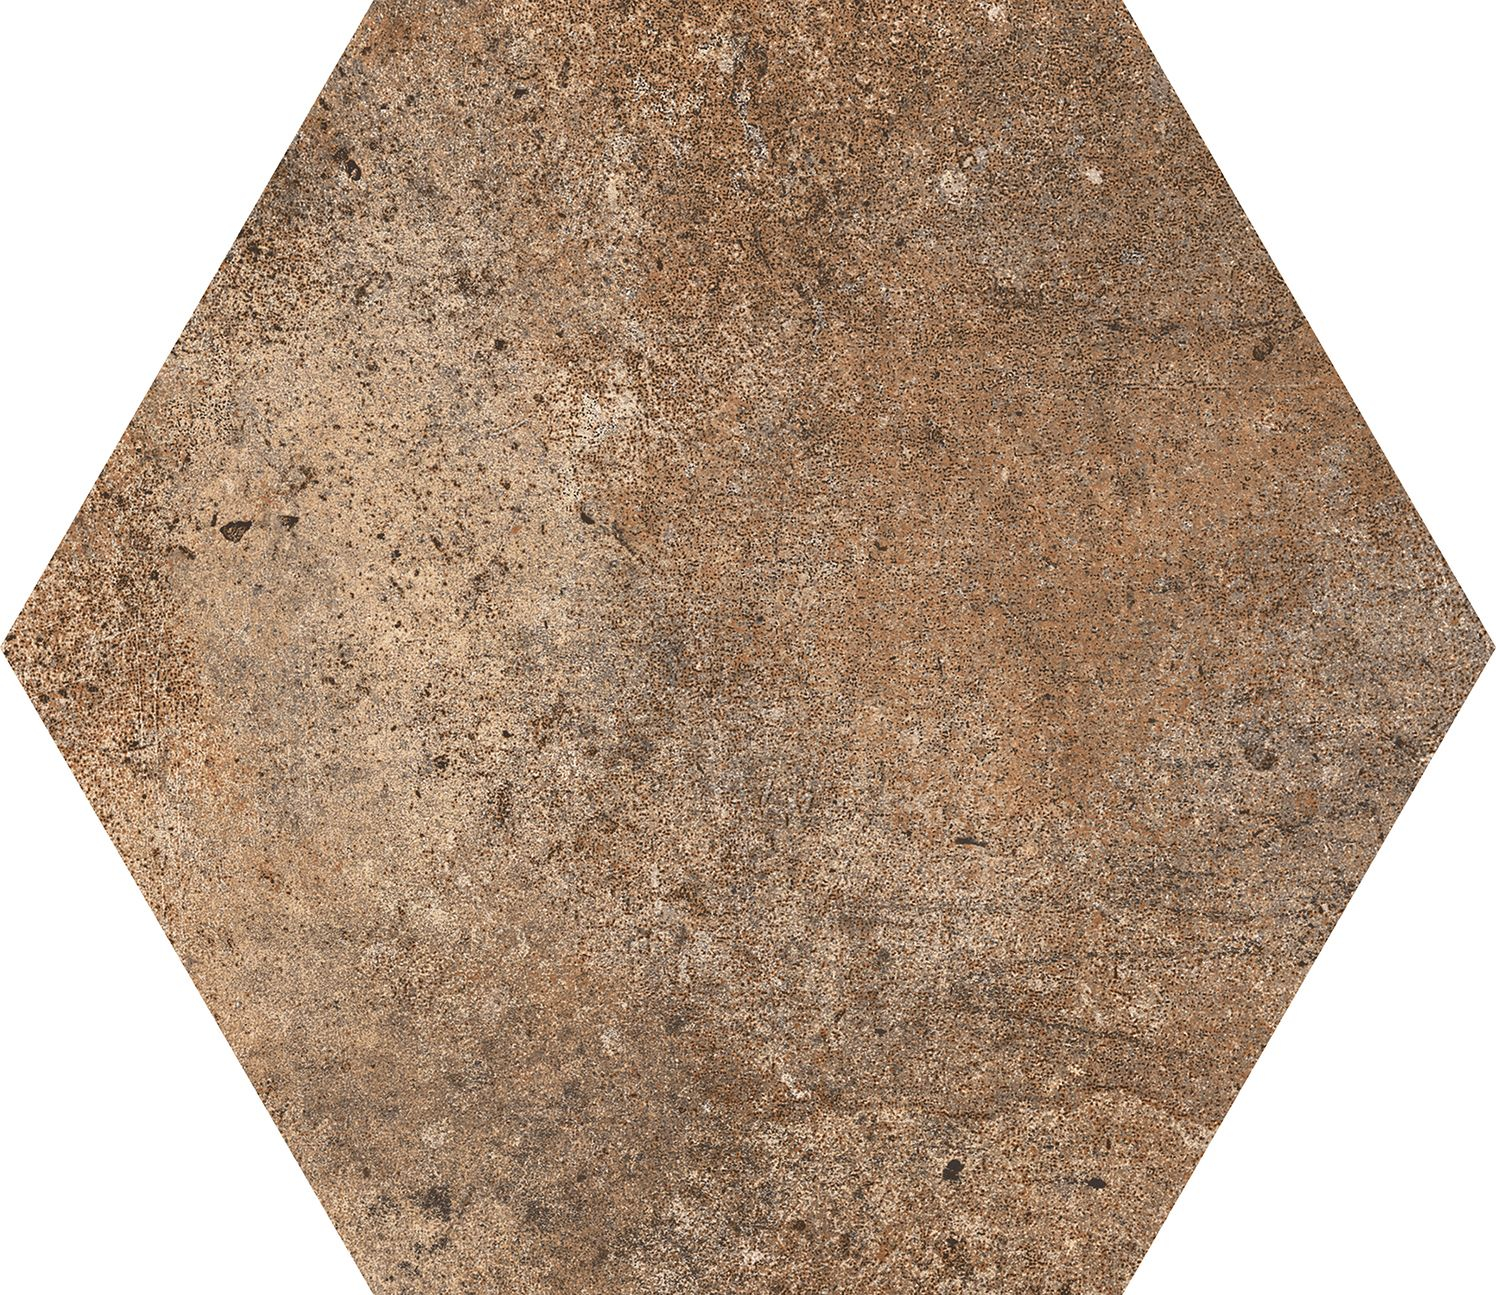 Codicer Abadia Hex 25 Hexagonal 22x25 см